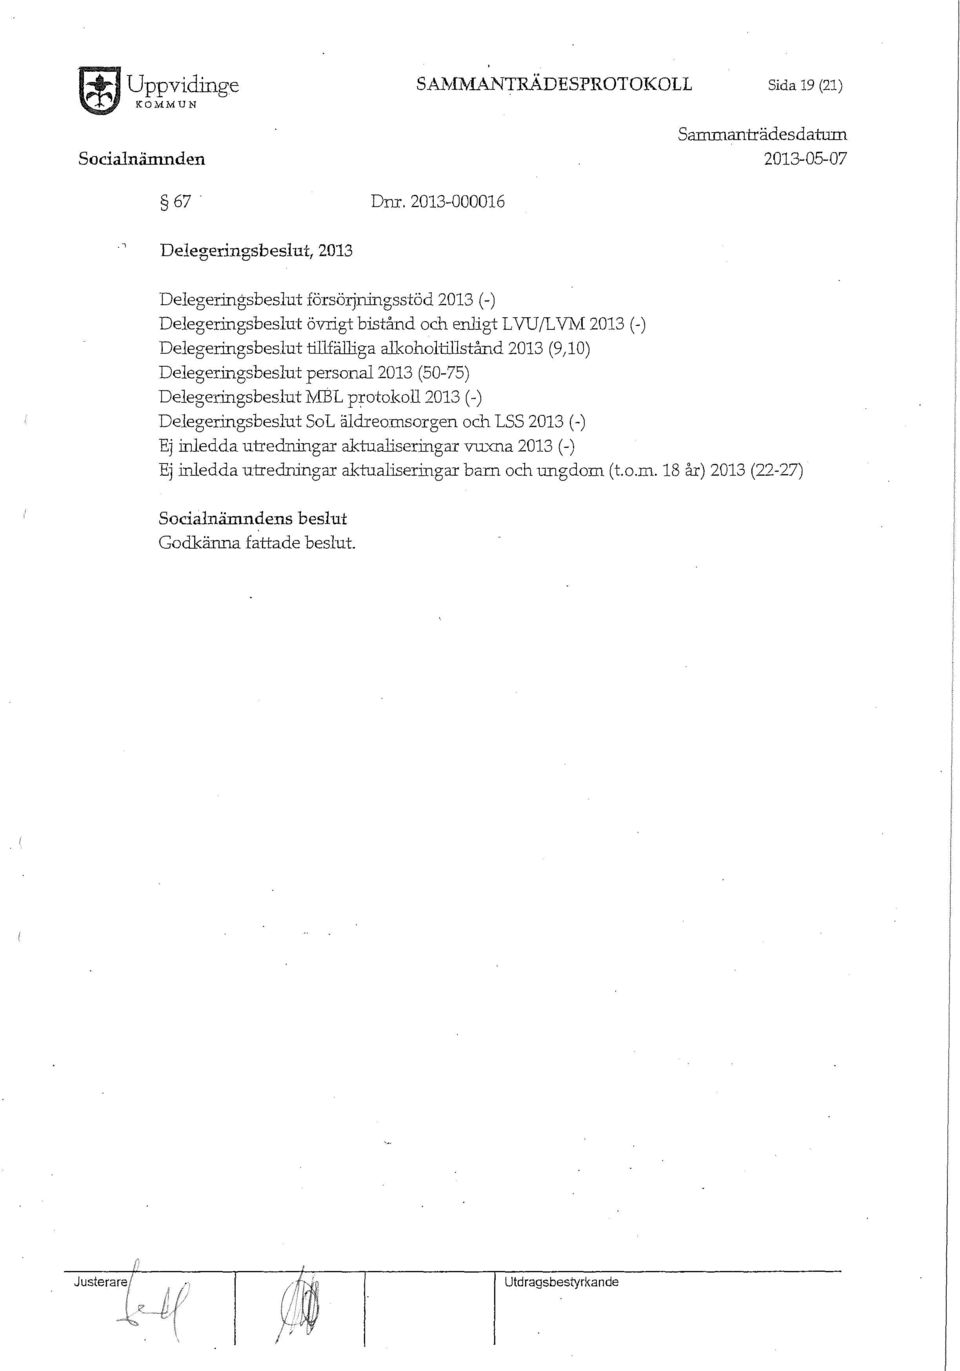 VNI 2013 (-) Delegeringsbeslut tillfälliga all<oholtillstånd 2013 (9)0) Delegeringsbeslut personal2013 (50-75) Delegeringsbeslut J'v'IBL protokoll 2013 (-)